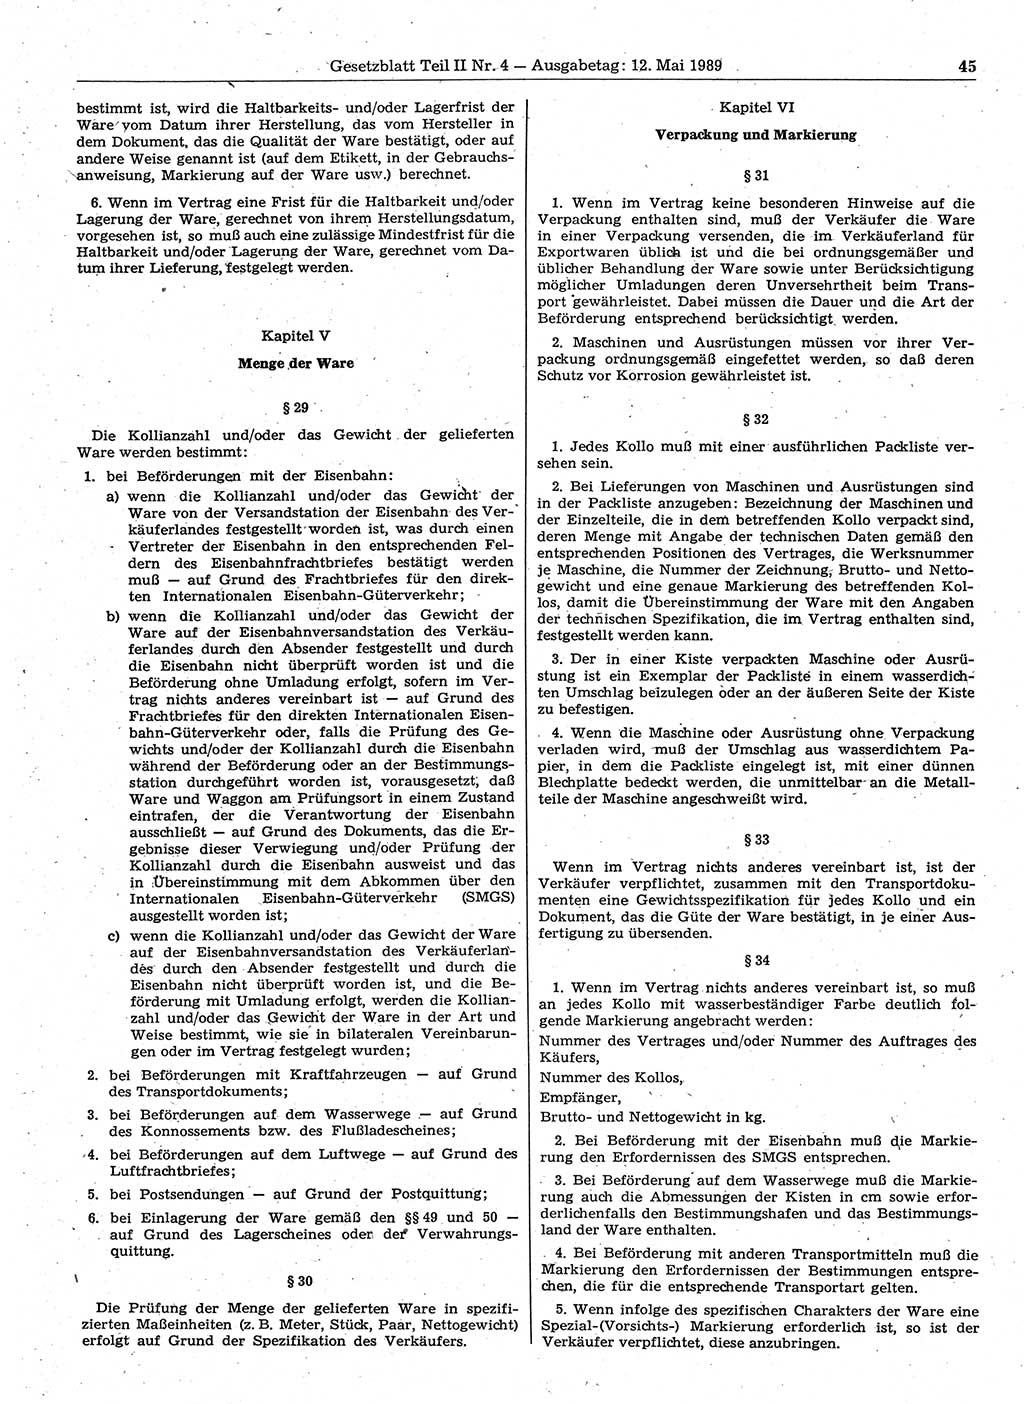 Gesetzblatt (GBl.) der Deutschen Demokratischen Republik (DDR) Teil ⅠⅠ 1989, Seite 45 (GBl. DDR ⅠⅠ 1989, S. 45)